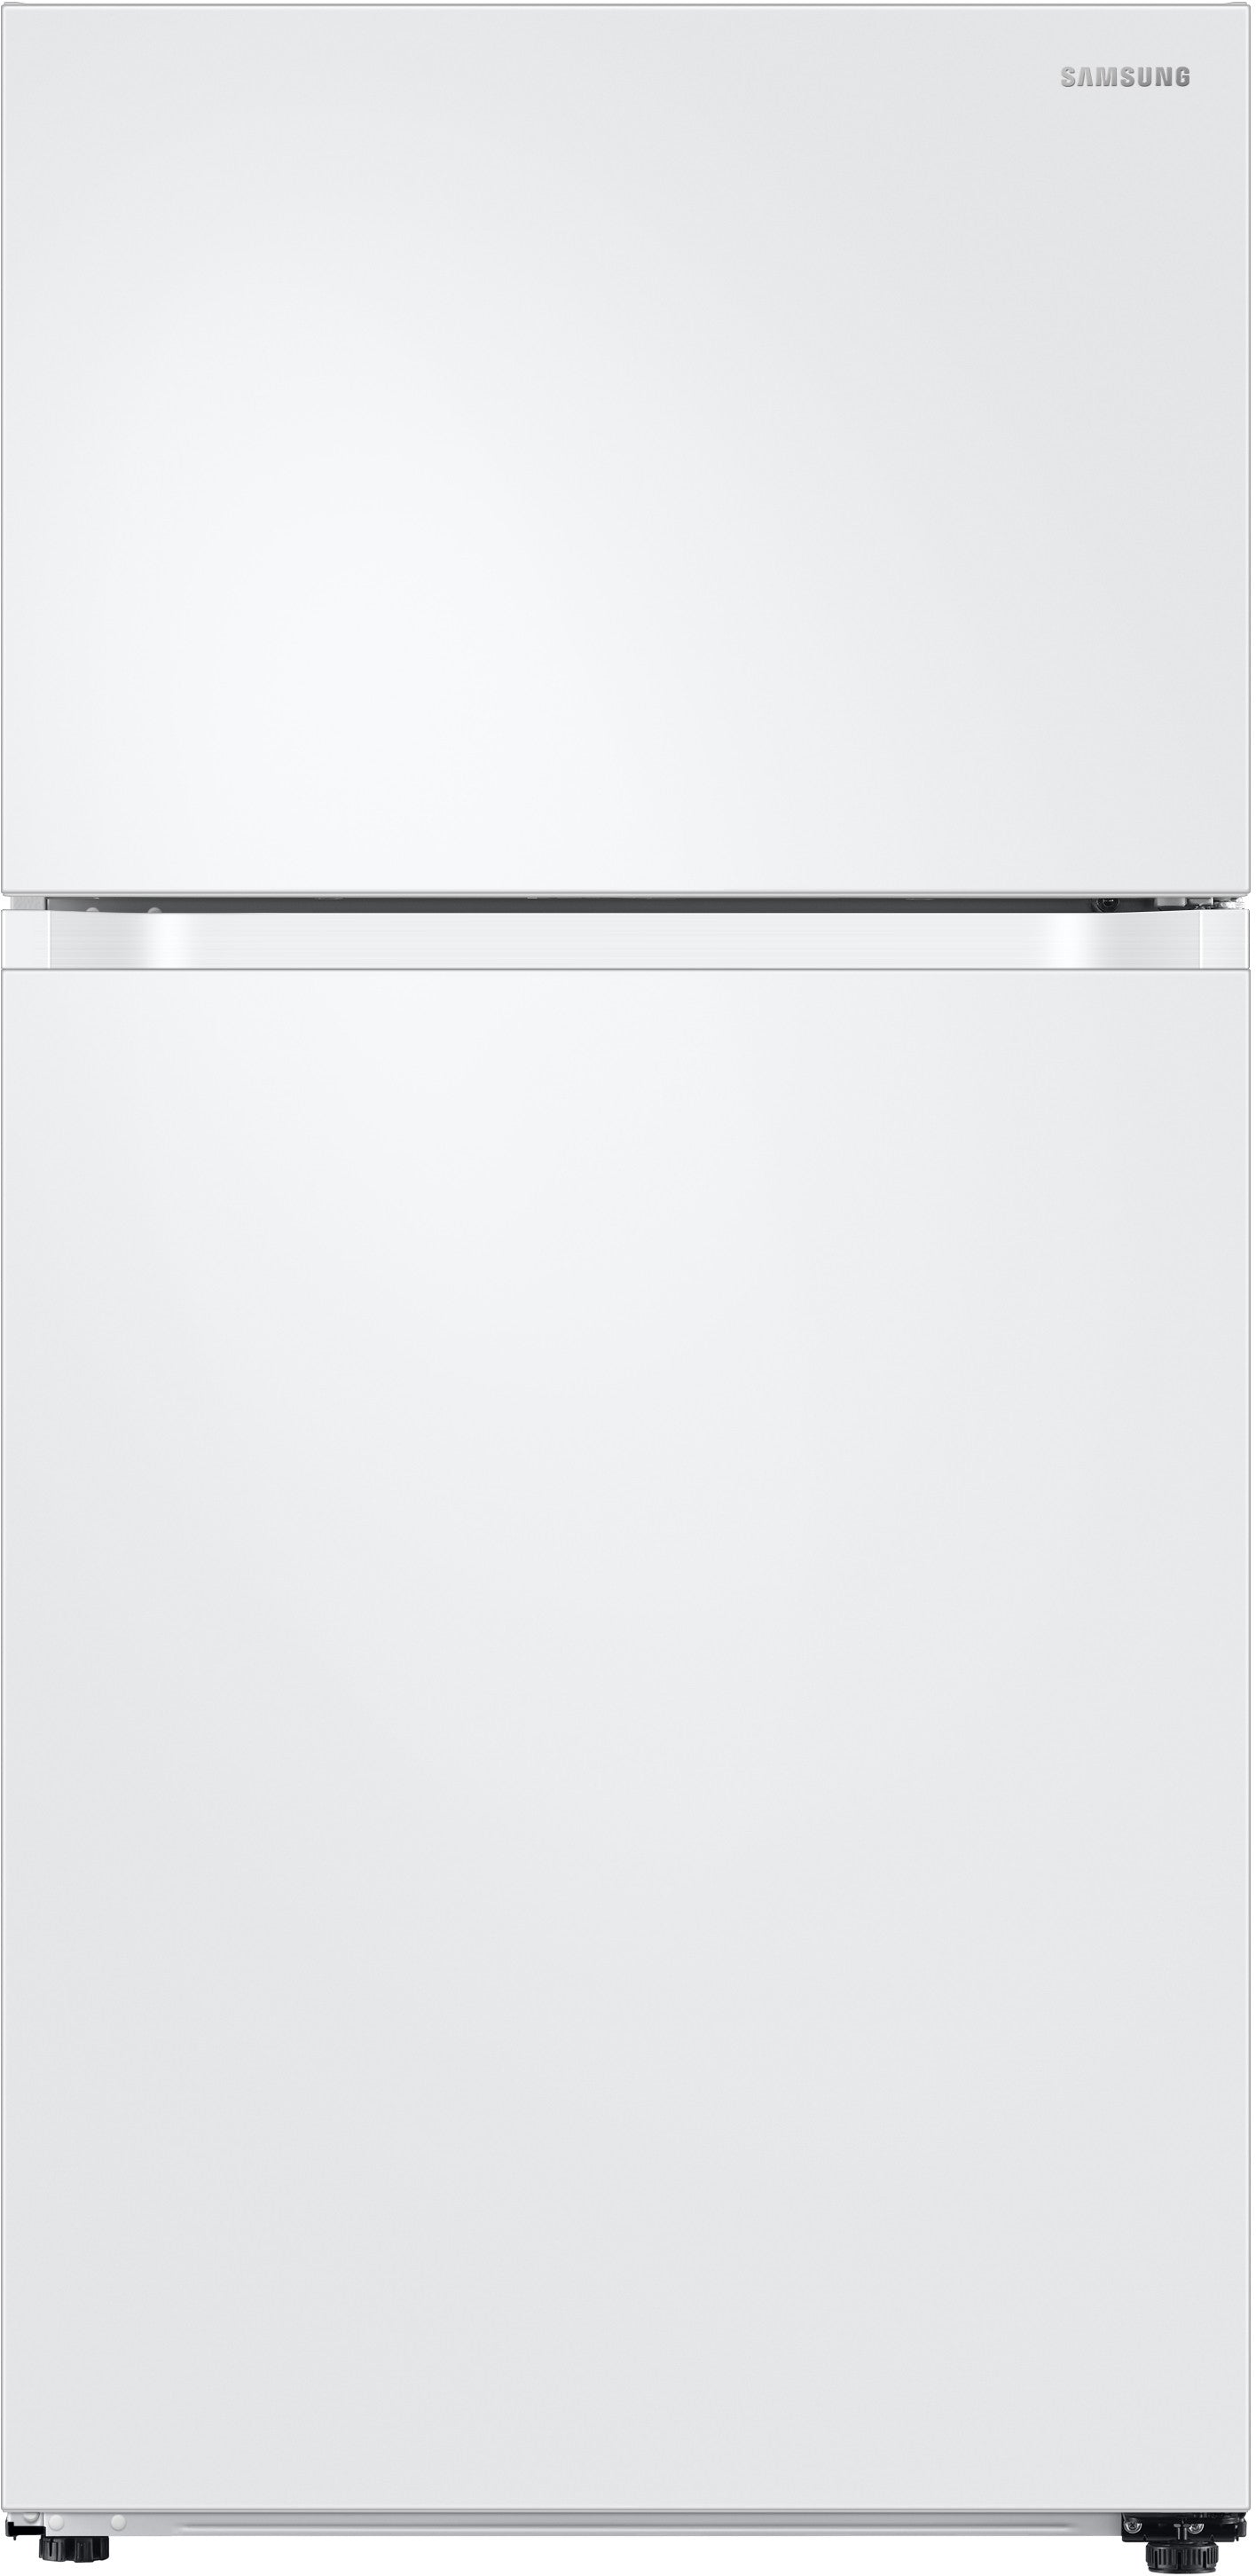 Samsung RT21M6213WW/AA 21 Cu. Ft. Top Freezer Refrigerator With Flex zone